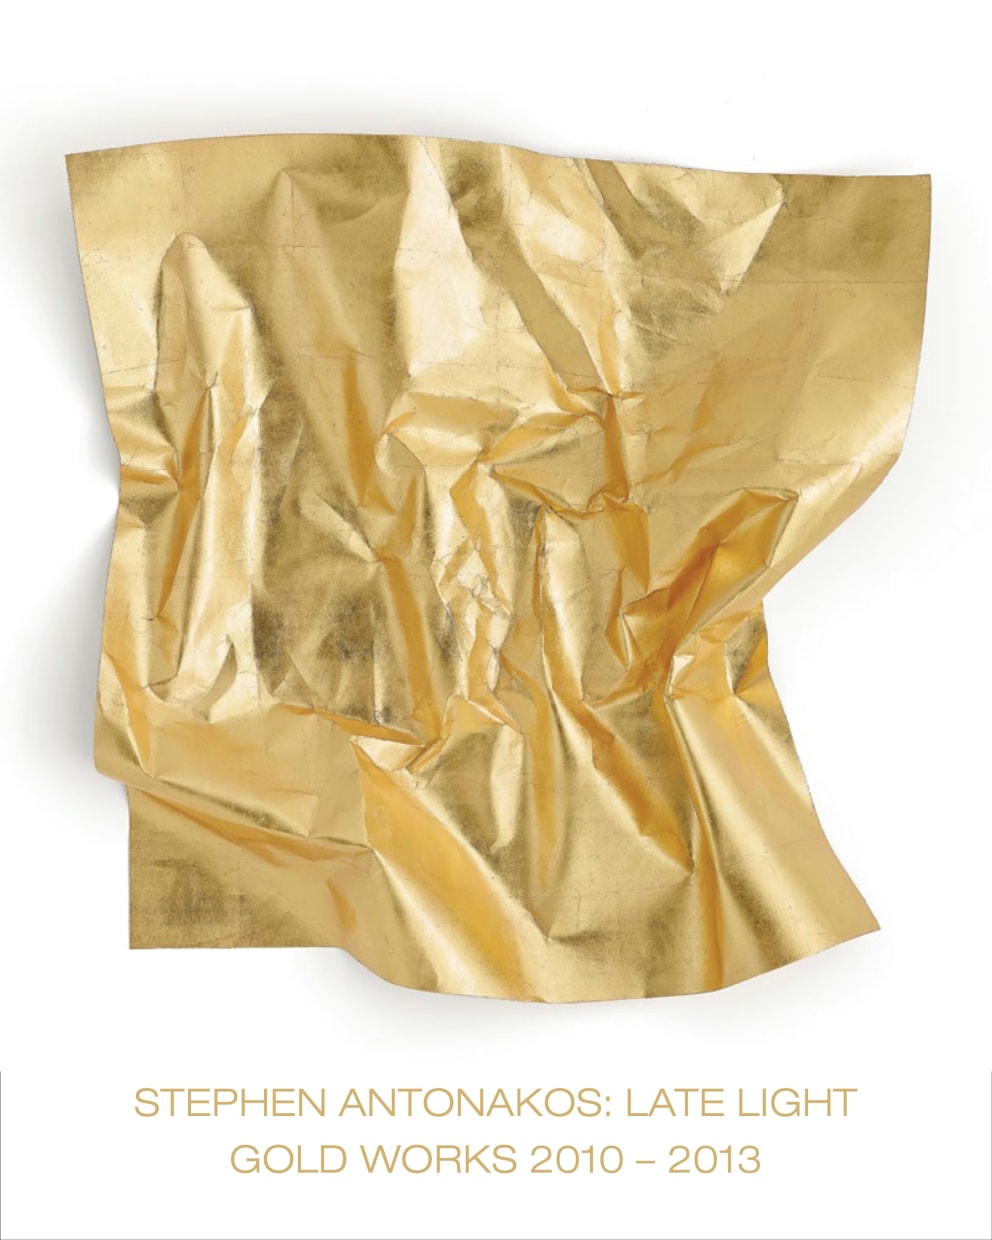 Stephen Antonakos: Late Light / Gold Works 2010 - 2013